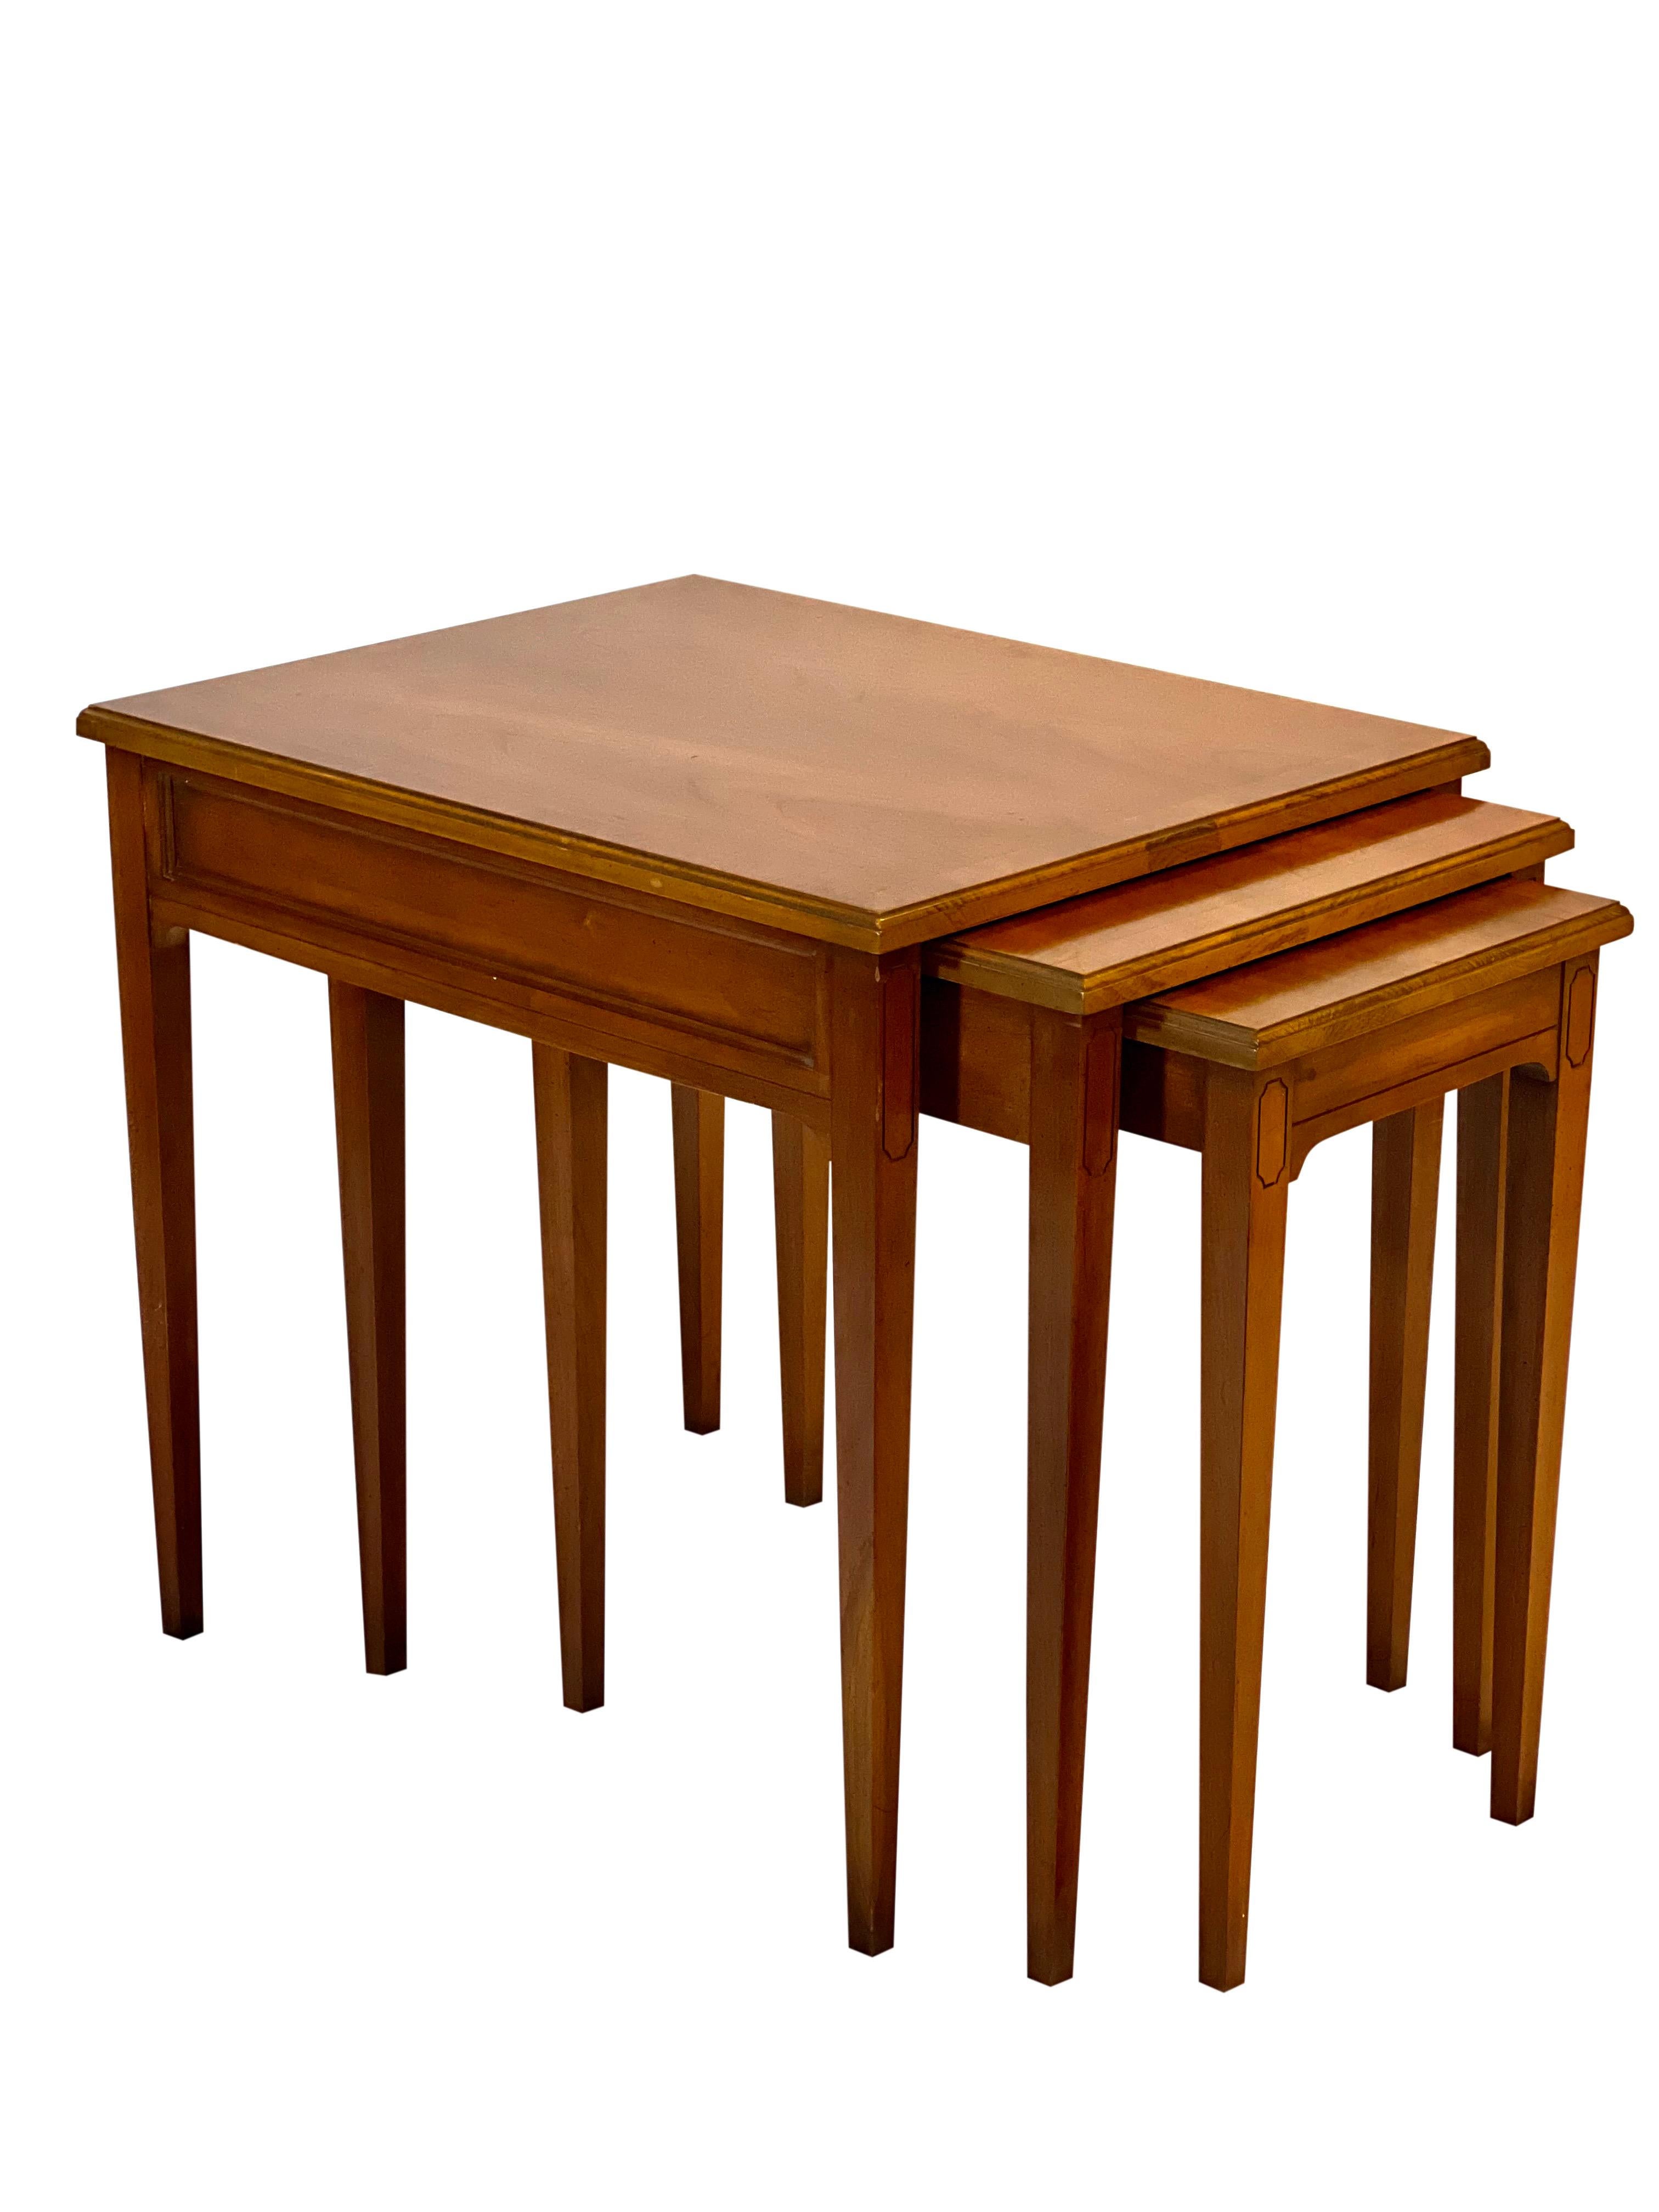 Nisttische aus Obstholz von Heritage aus der Jahrhundertmitte, 3er-Set.

Wunderschön gearbeitete Tische in nahezu neuwertigem Zustand. Das Set ist mit eingebauten Gleitschienen ausgestattet, die die Tische nicht nur schützen, sondern auch perfekt